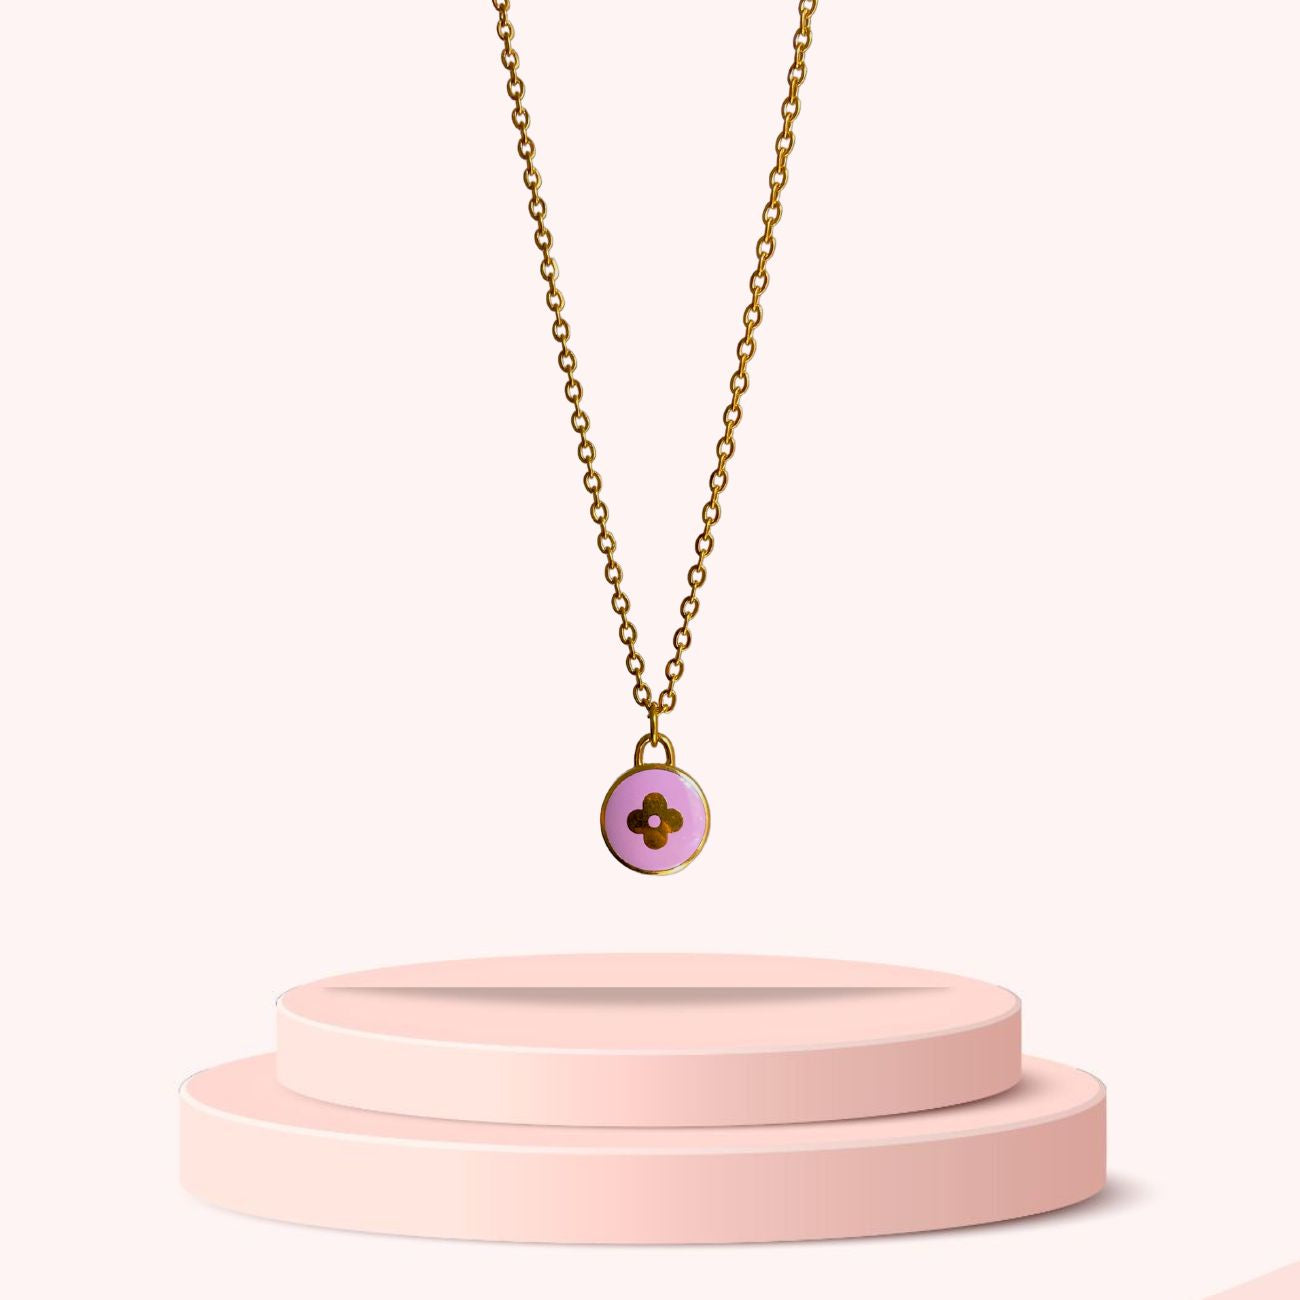 Authentic Louis Vuitton Pendant Lavender - Necklace – Boutique